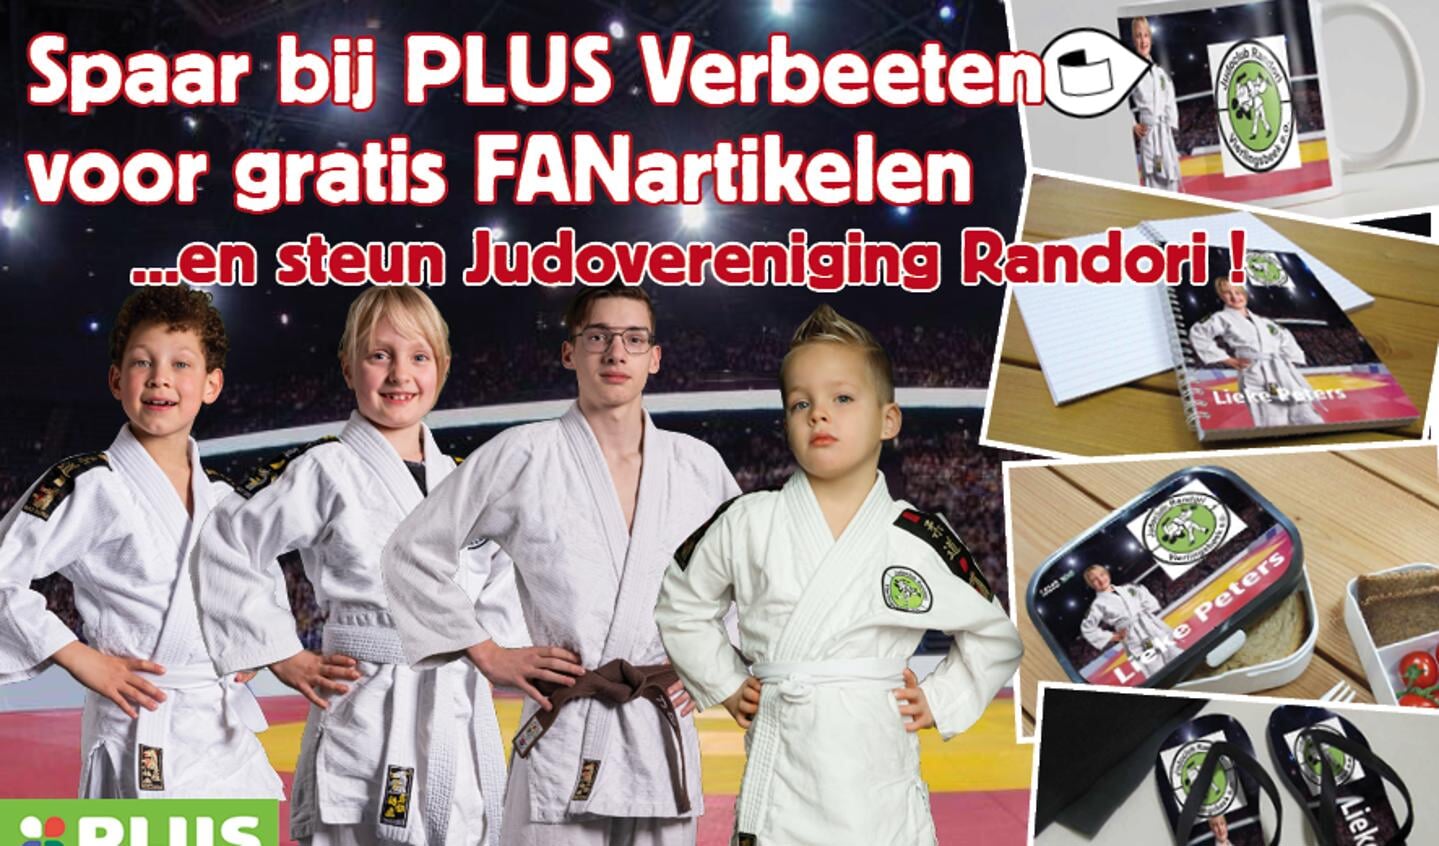 Judovereniging Randori doet mee aan de fan-spaaractie bij PLUS Verbeeten. 